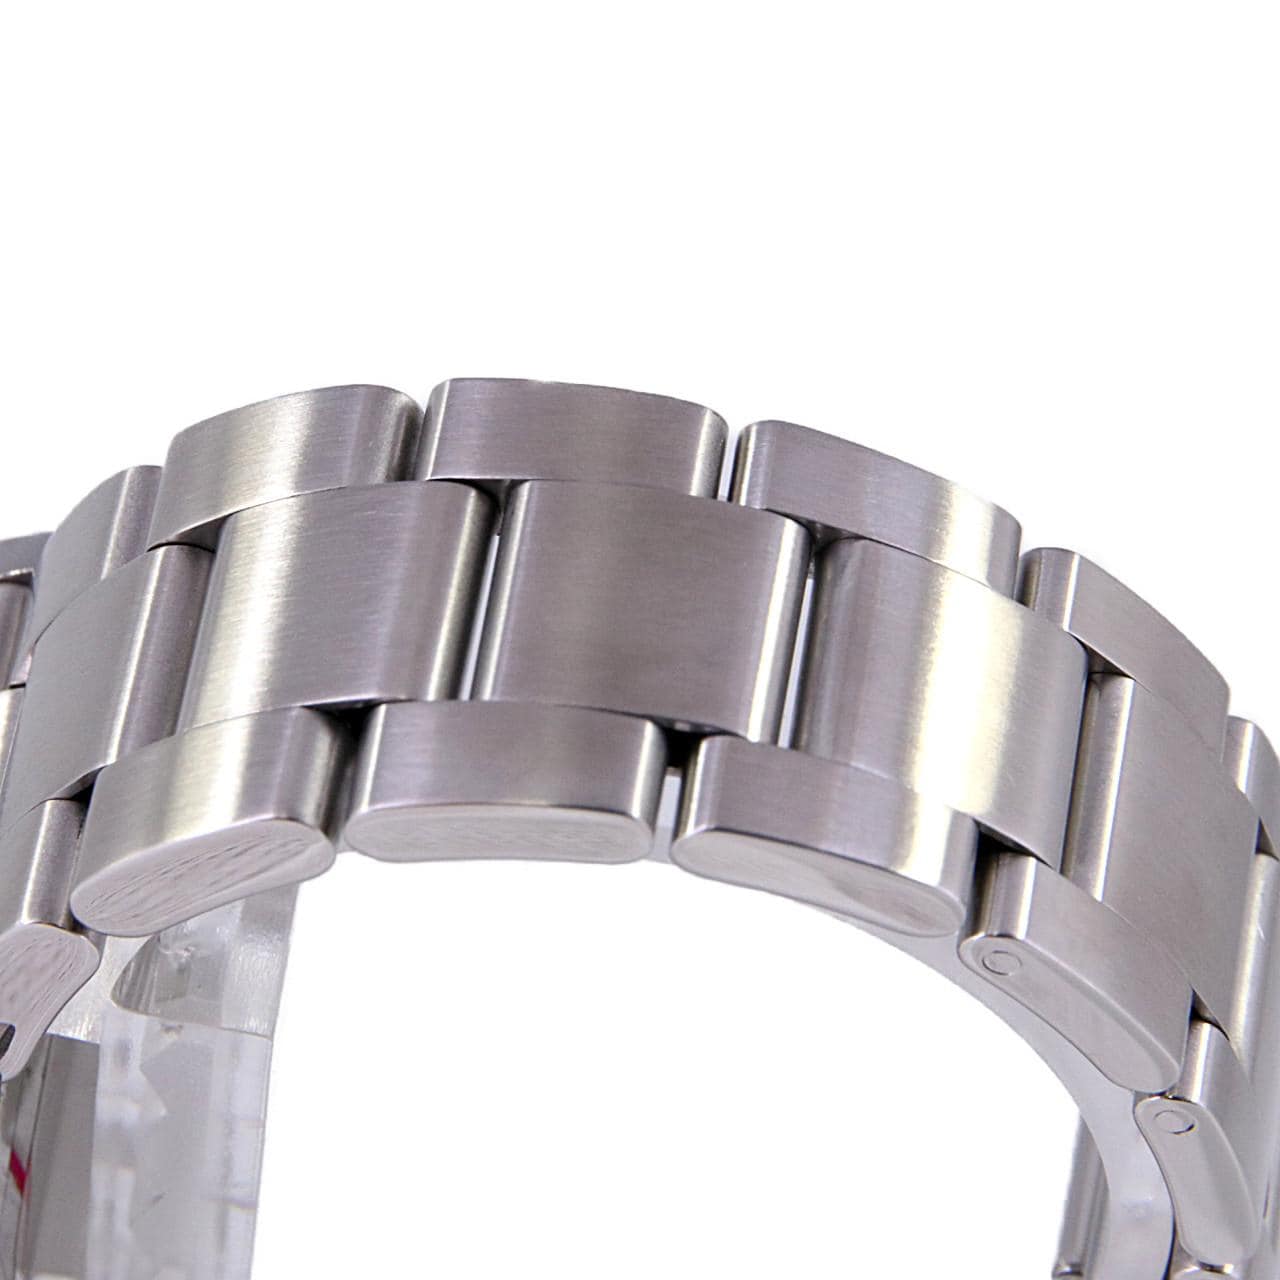 【106007】ROLEX ロレックス  114270 エクスプローラー ブラックダイヤル Y番 SS 自動巻き 当店オリジナルボックス 腕時計 時計 WATCH メンズ 男性 男 紳士